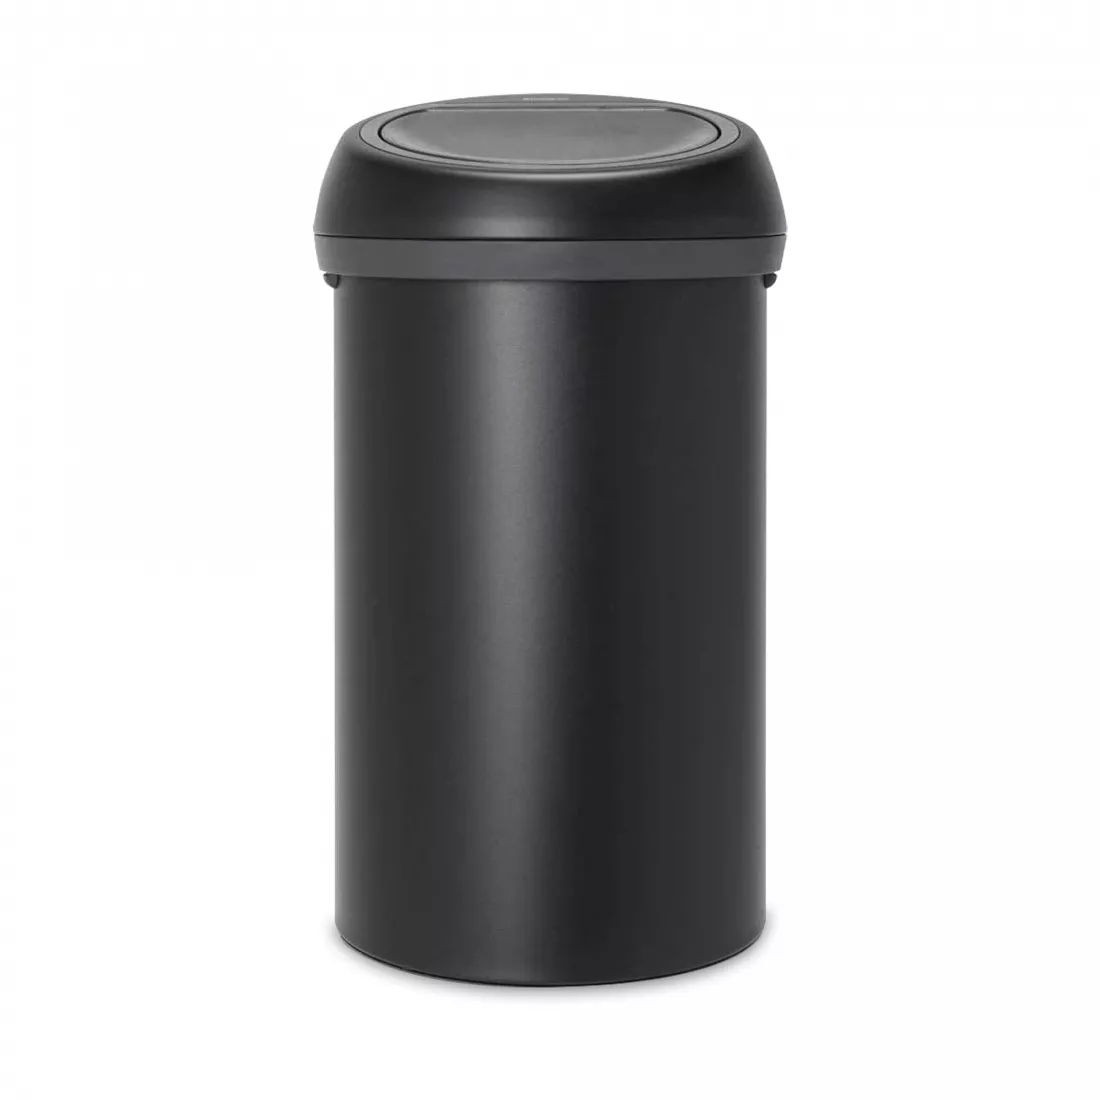 Контейнер для мусора с крышкой, объем: 60 л, материал: нержавеющая сталь, пластик, цвет: черный, серия TOUCH BIN, B128981, BRABANTIA, Бельгия от магазина ЛесКонПром.ру